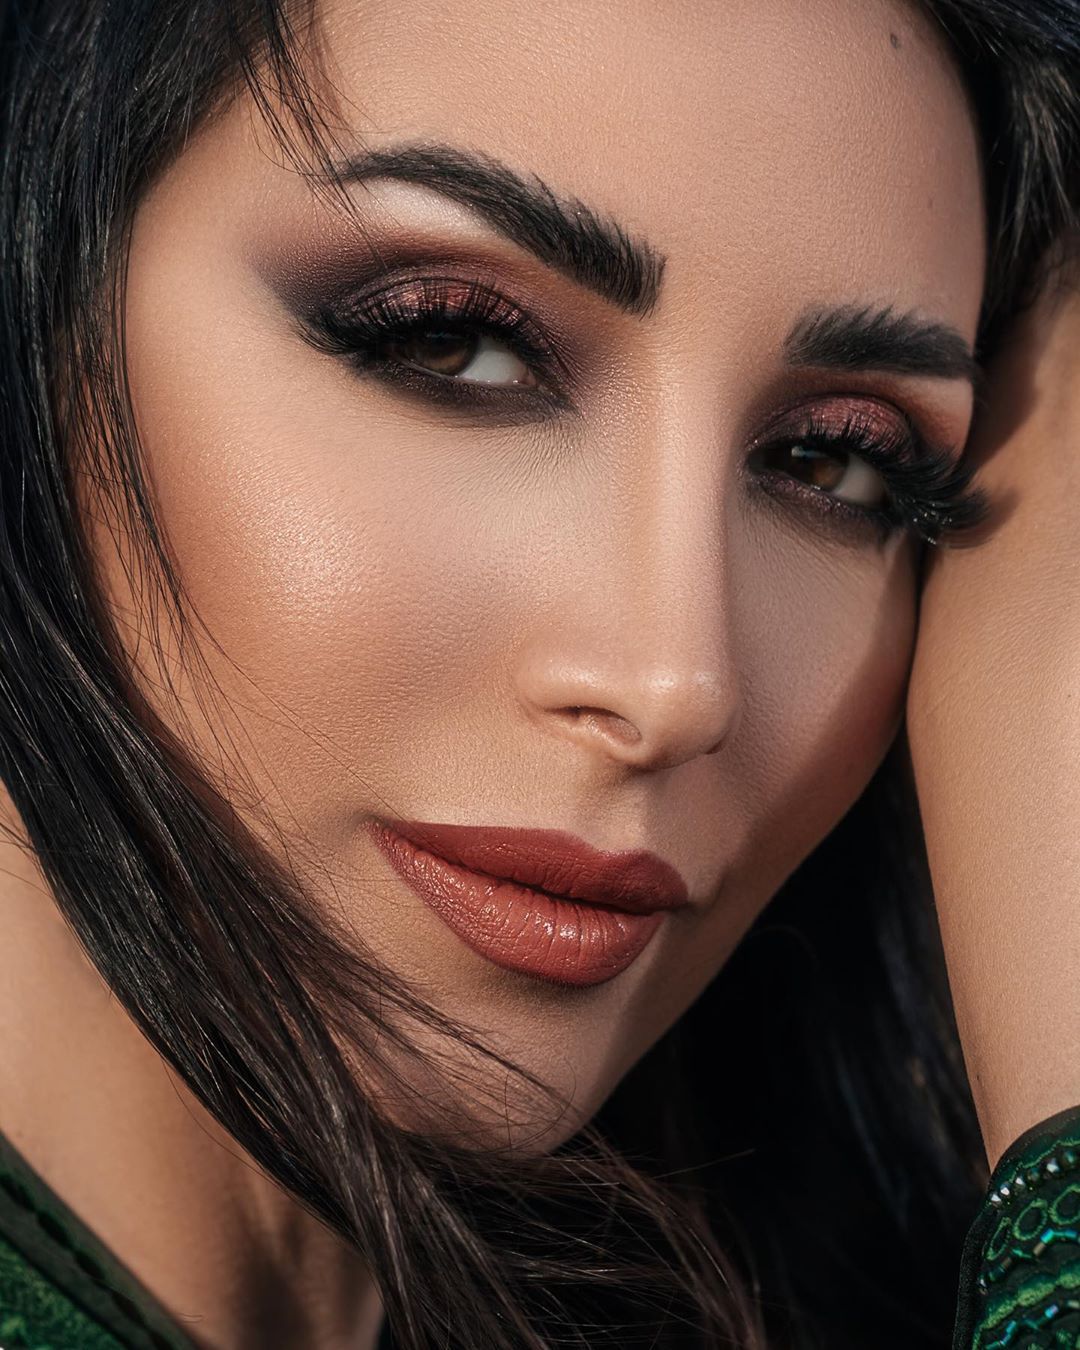 Beautiful Arabic Woman with amazing make up